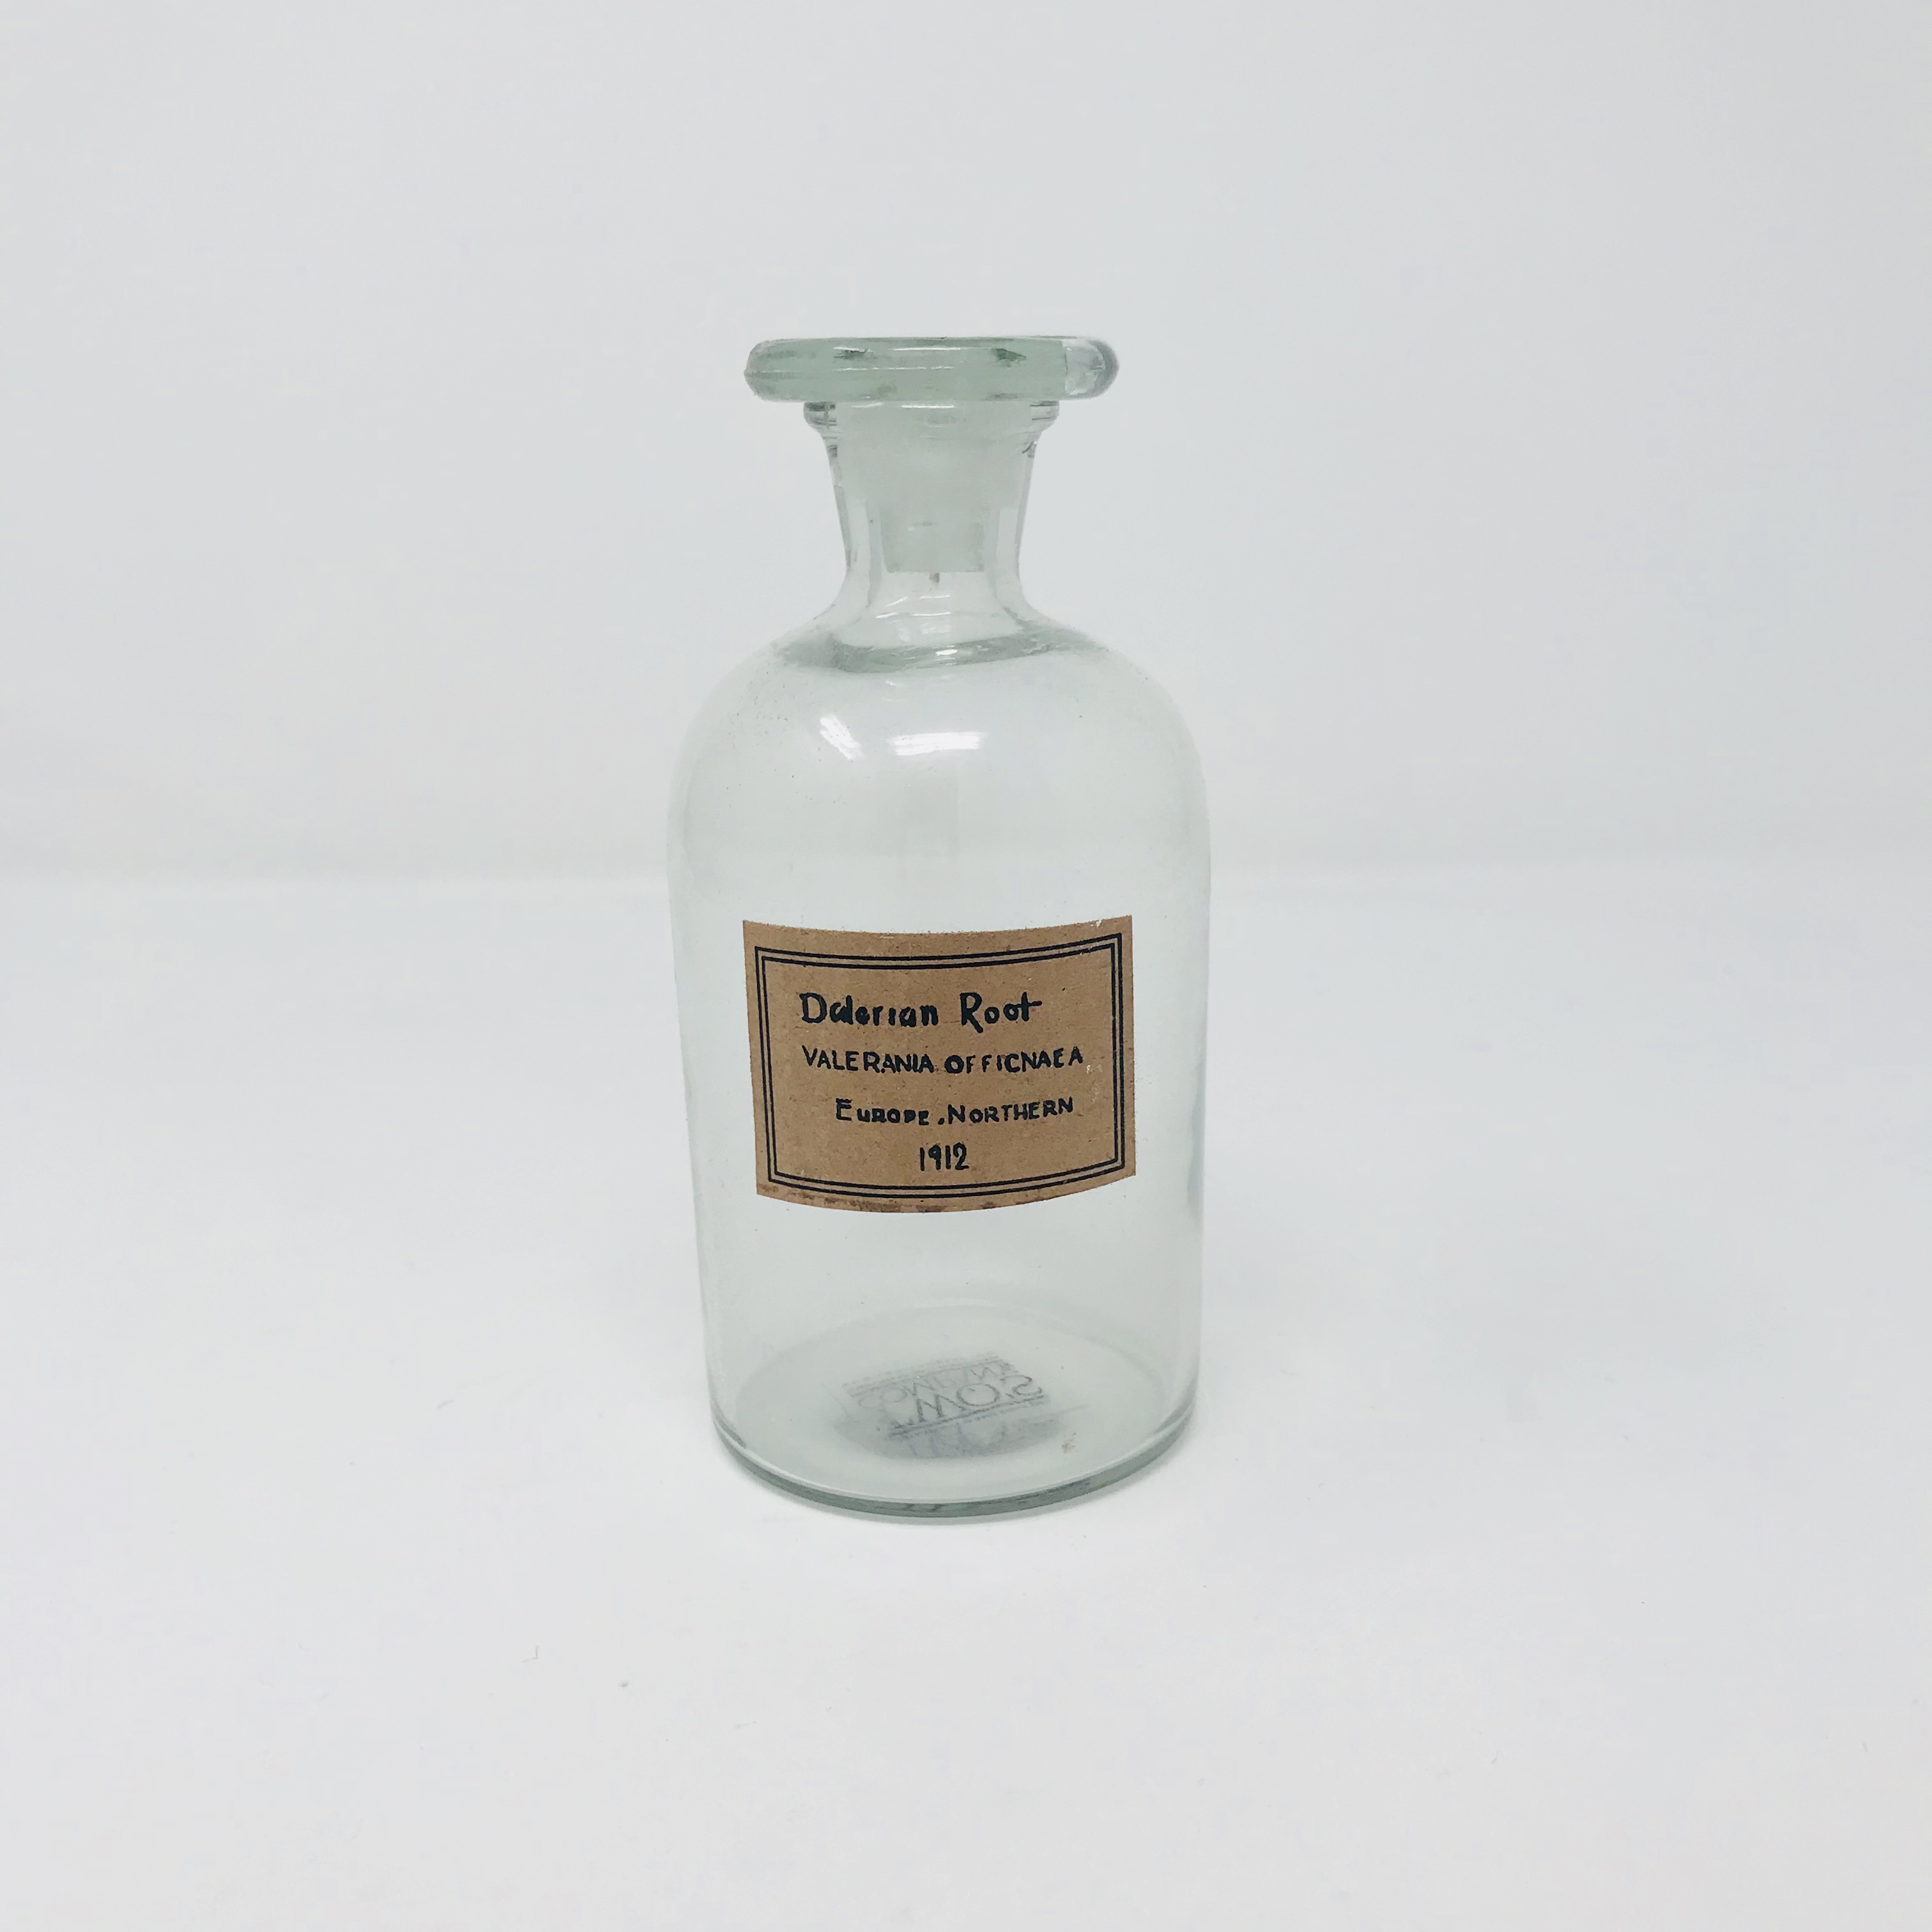 Two's Company Small Narrow Neck Apothecary Jar